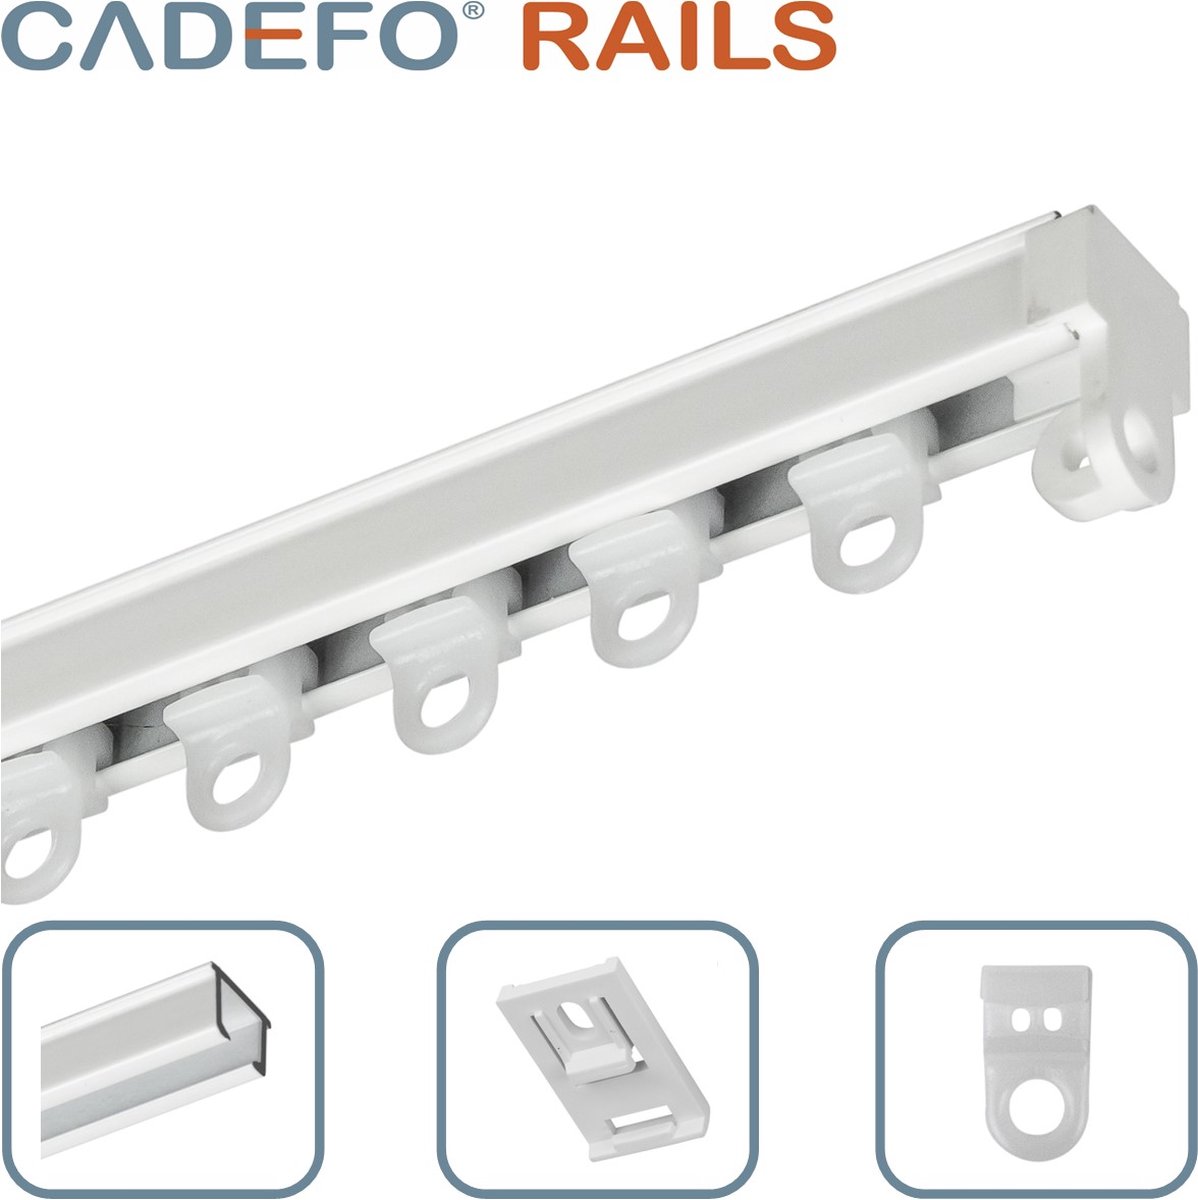 CADEFO RAILS (301 - 350 cm) Gordijnrails - Compleet op maat! - UIT 1 STUK - Leverbaar tot 6 meter - Plafondbevestiging - Lengte 340 cm